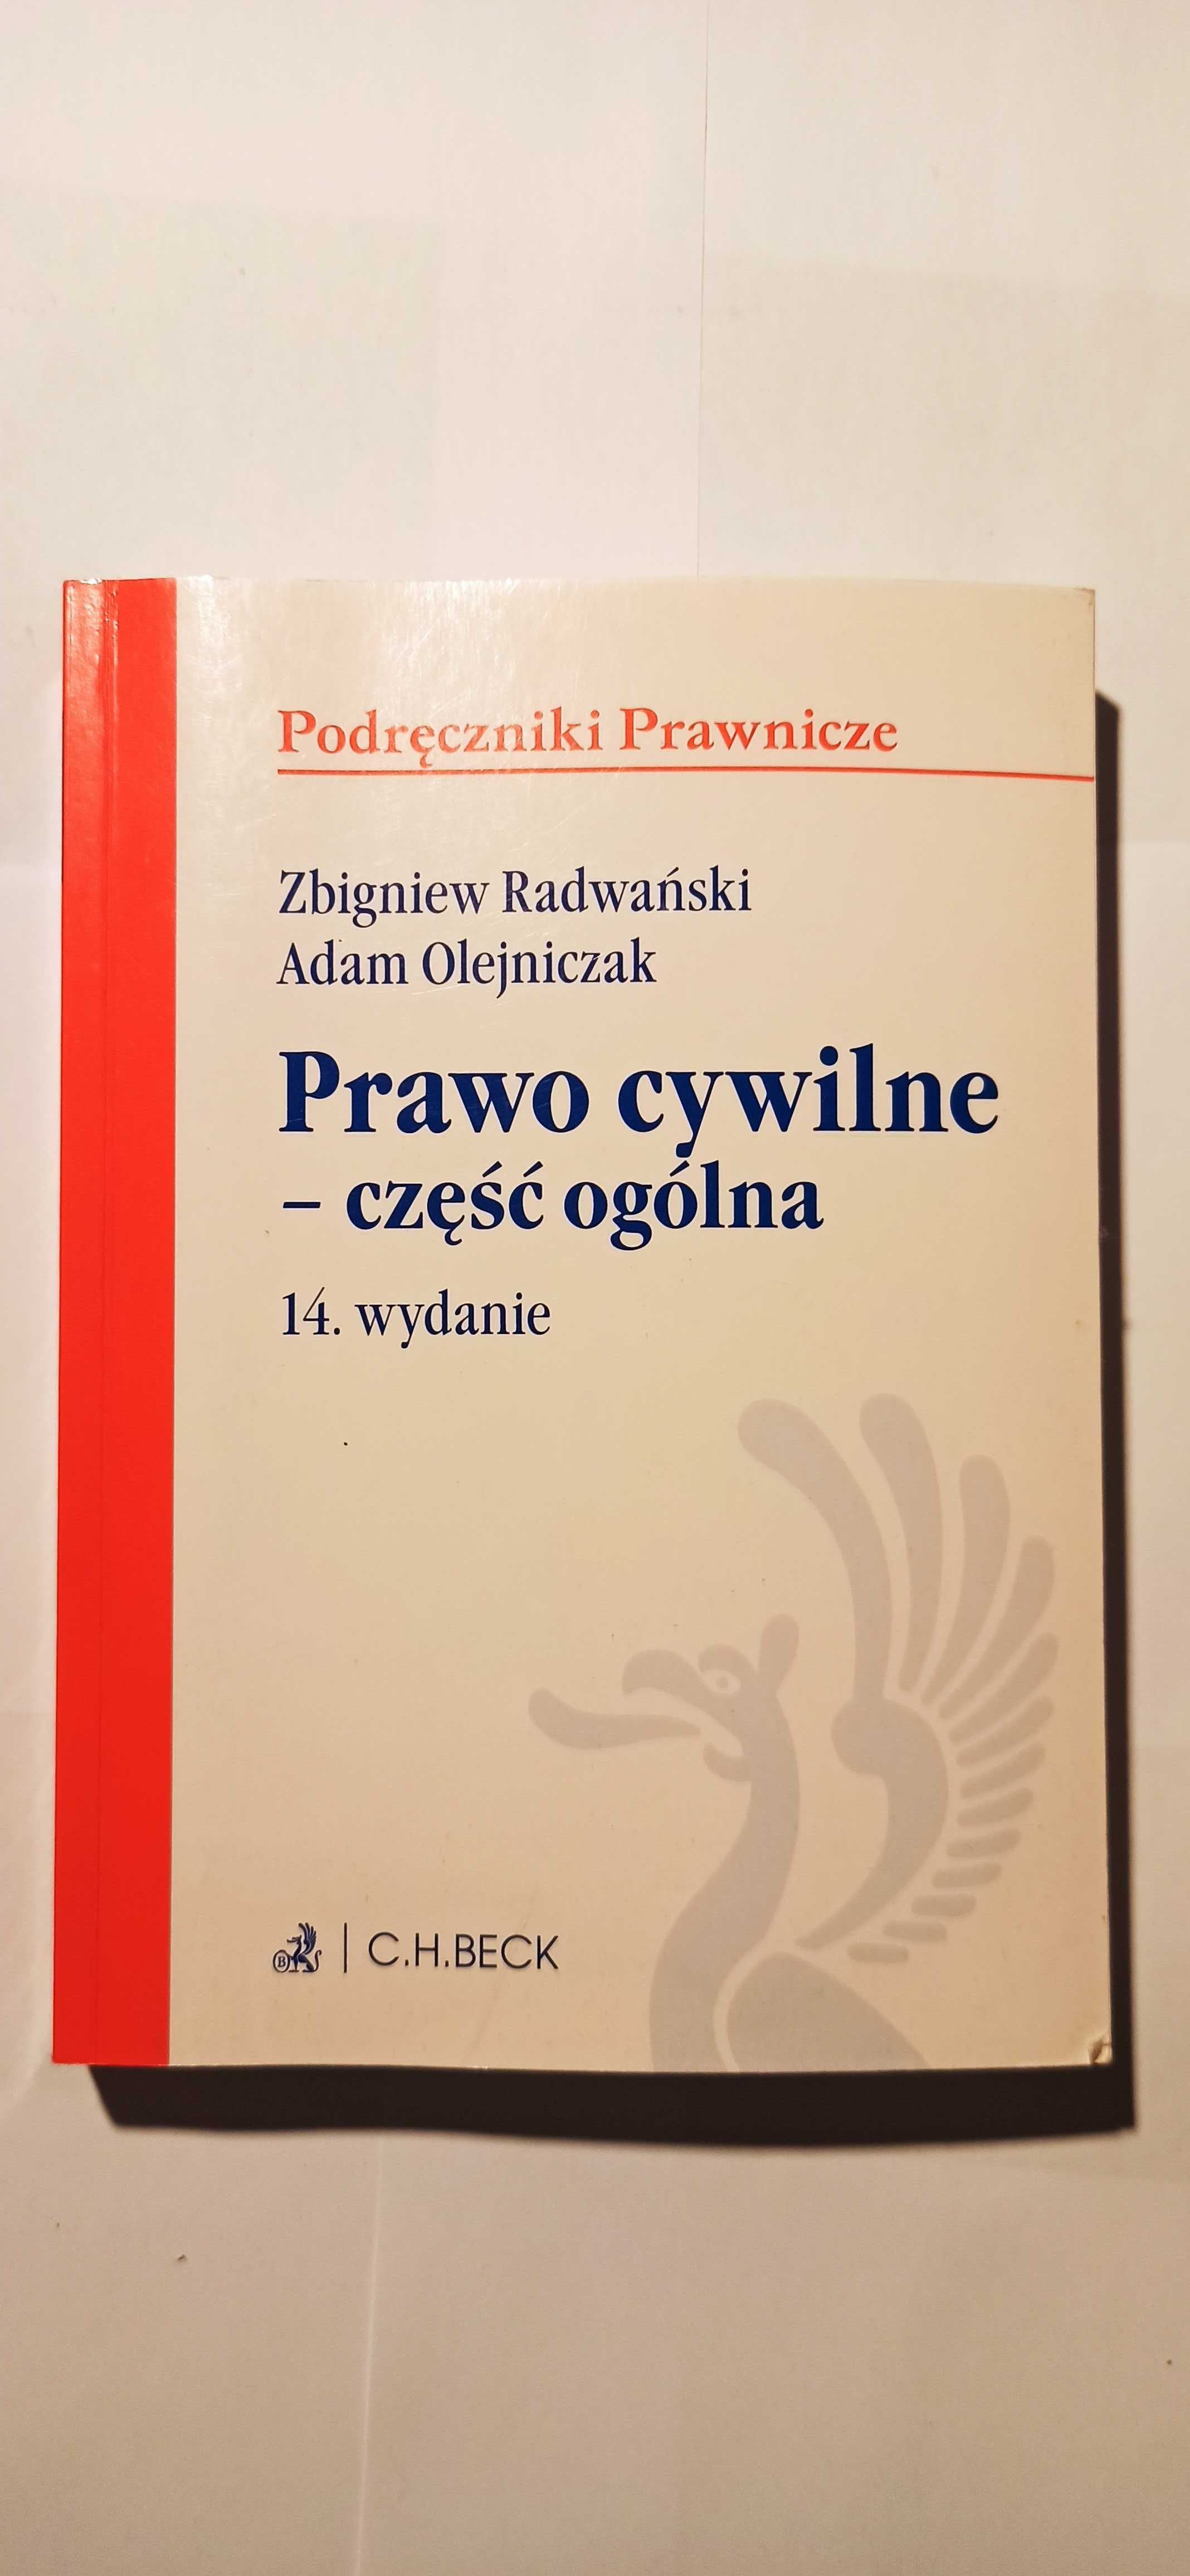 Prawo cywilne - część ogólna. Radwański, Olejniczak. 14 wydanie